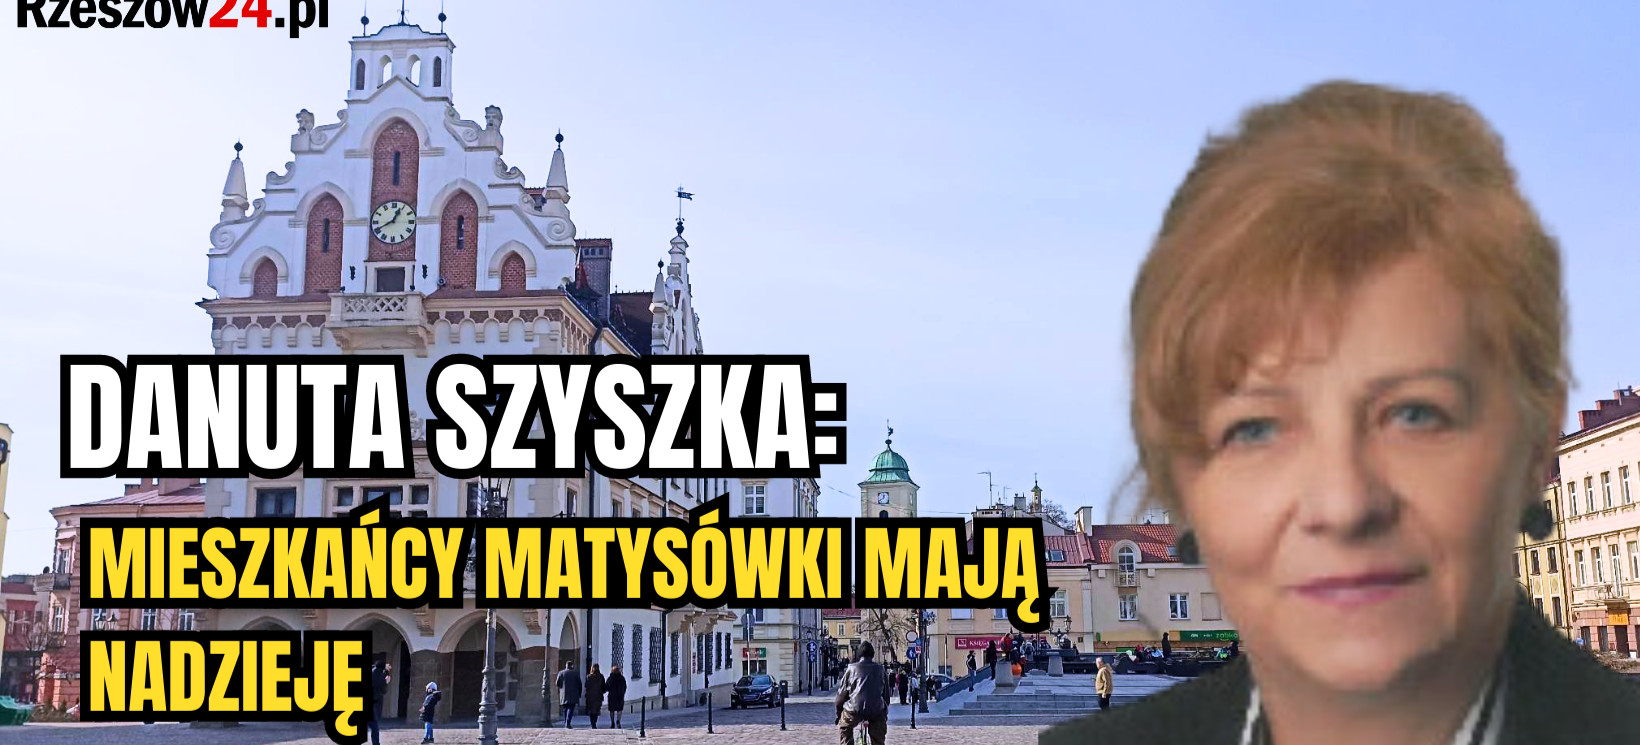 RZESZÓW. DANUTA SZYSZKA: Mieszkańcy Matysówki mają nadzieję (VIDEO)